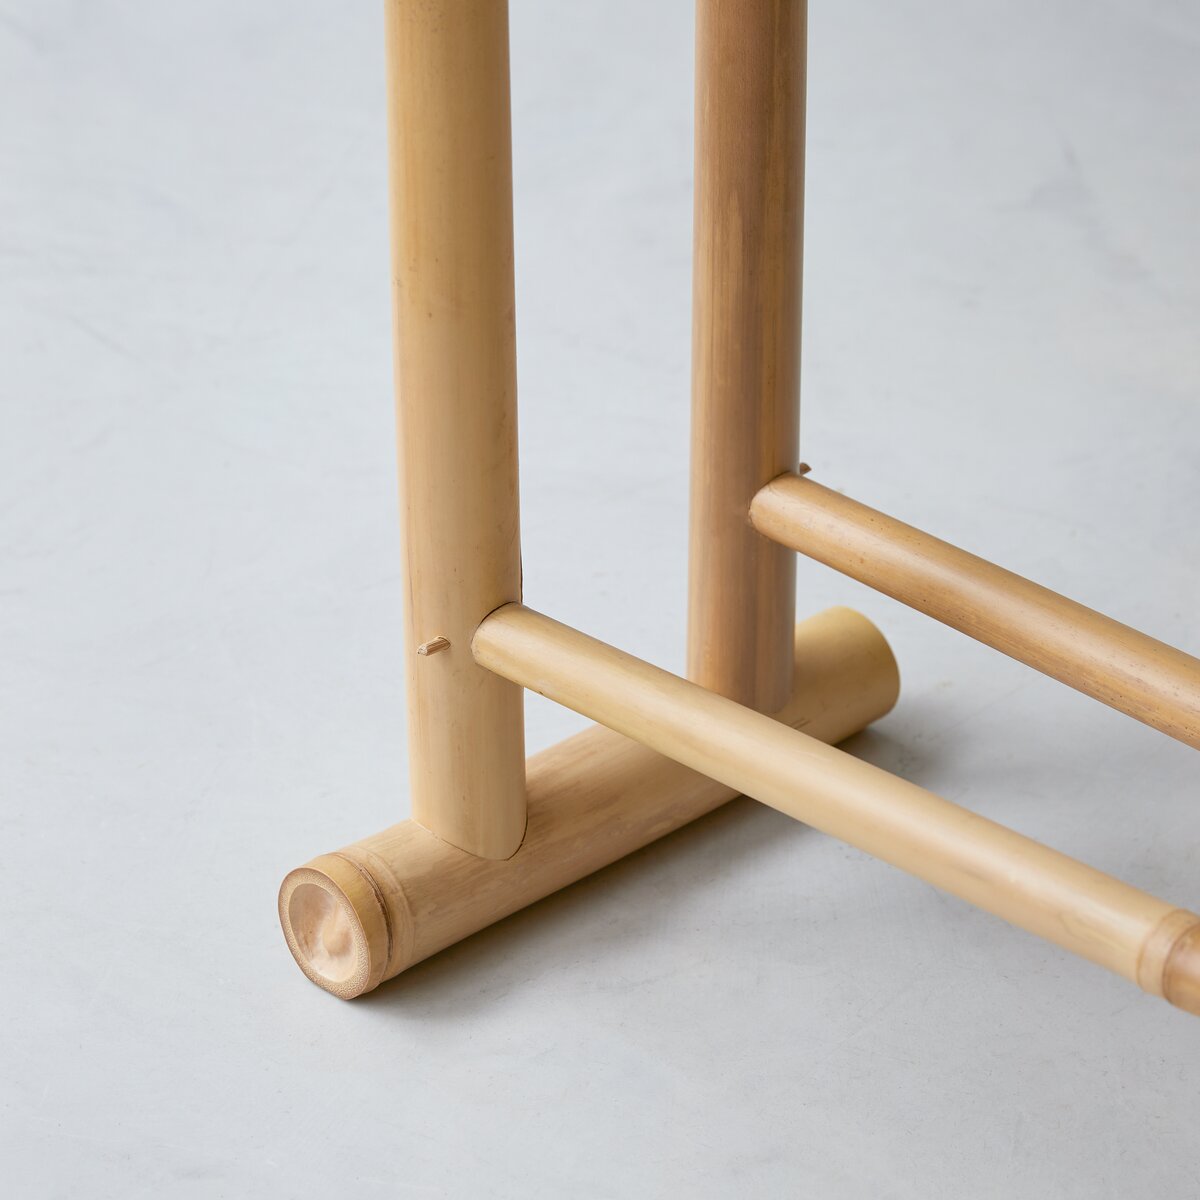 Toallero de bambú de 40 niveles de 3 niveles, soporte de edredón o manta,  extra alto, independiente de madera maciza, con estante inferior de